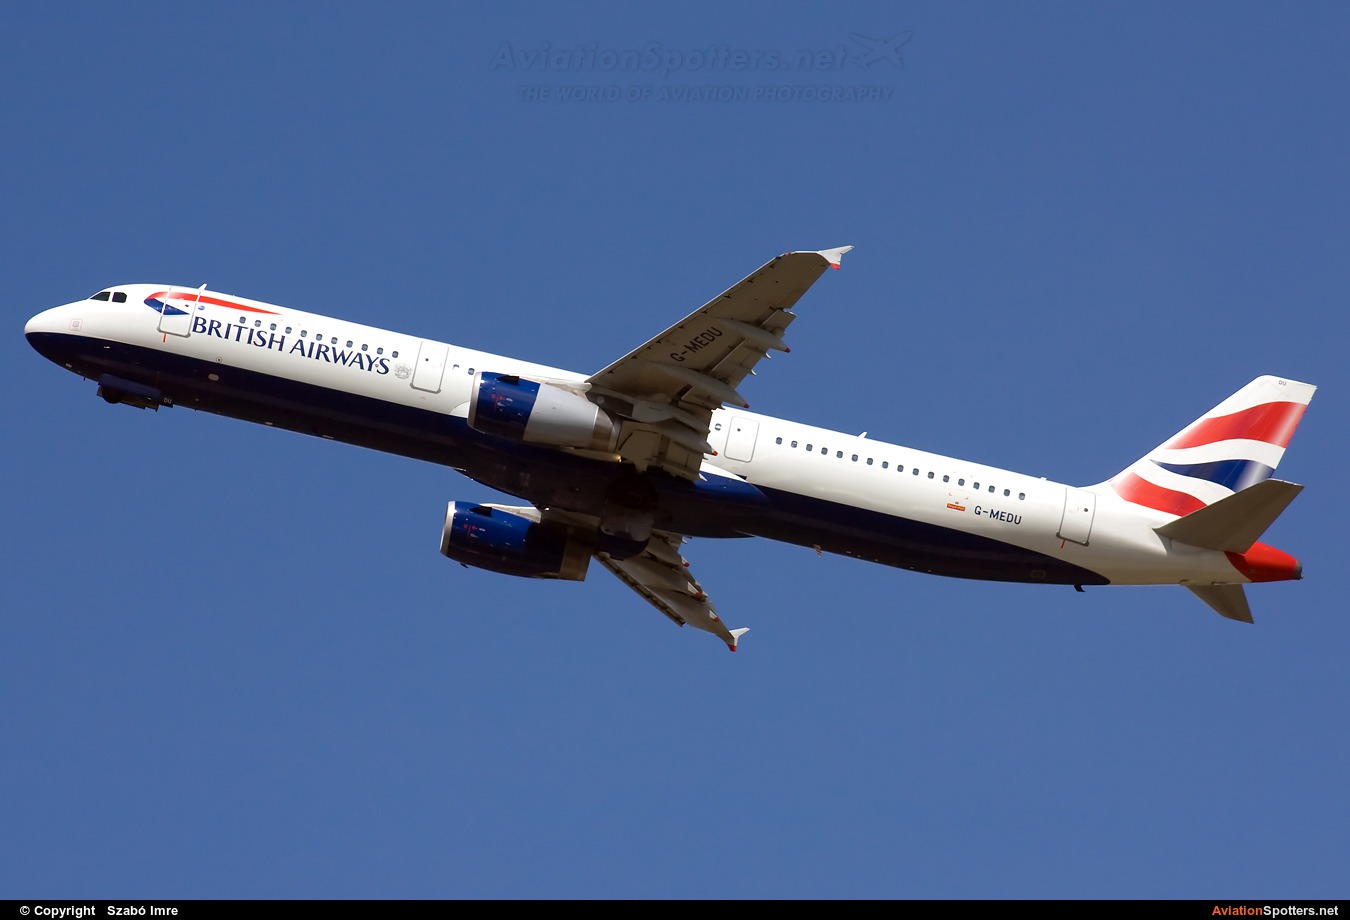 British Airways  -  A321-231  (G-MEDU) By Szabó Imre (SzImre71)